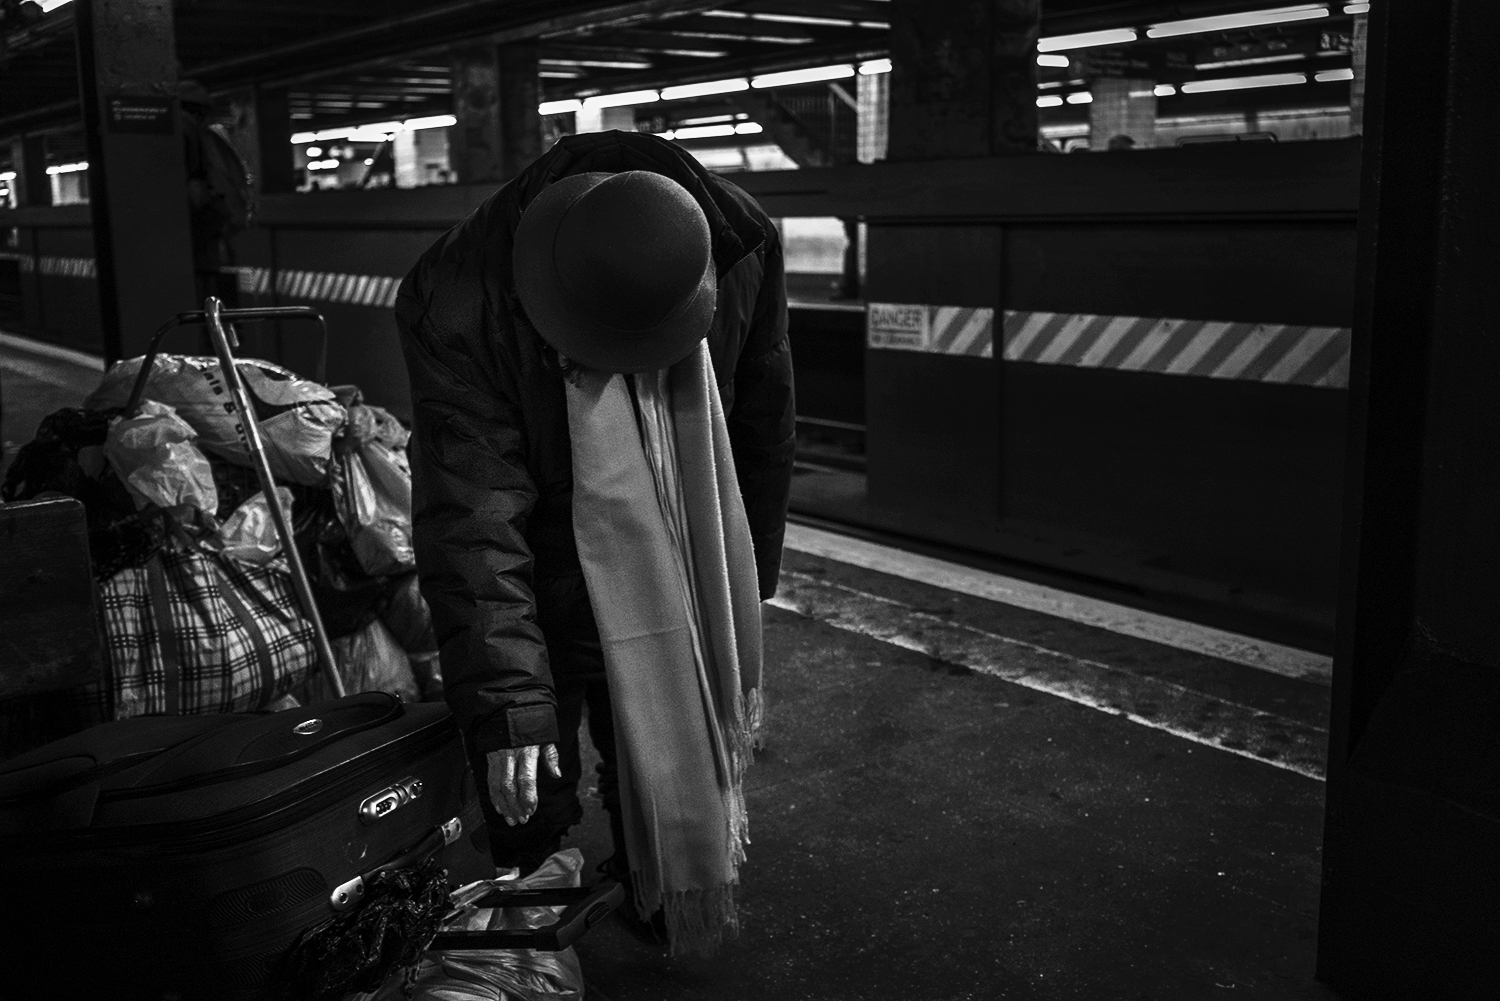 Brklyn_Subway_2018_Hoyt_Homeless_woman-113.jpg